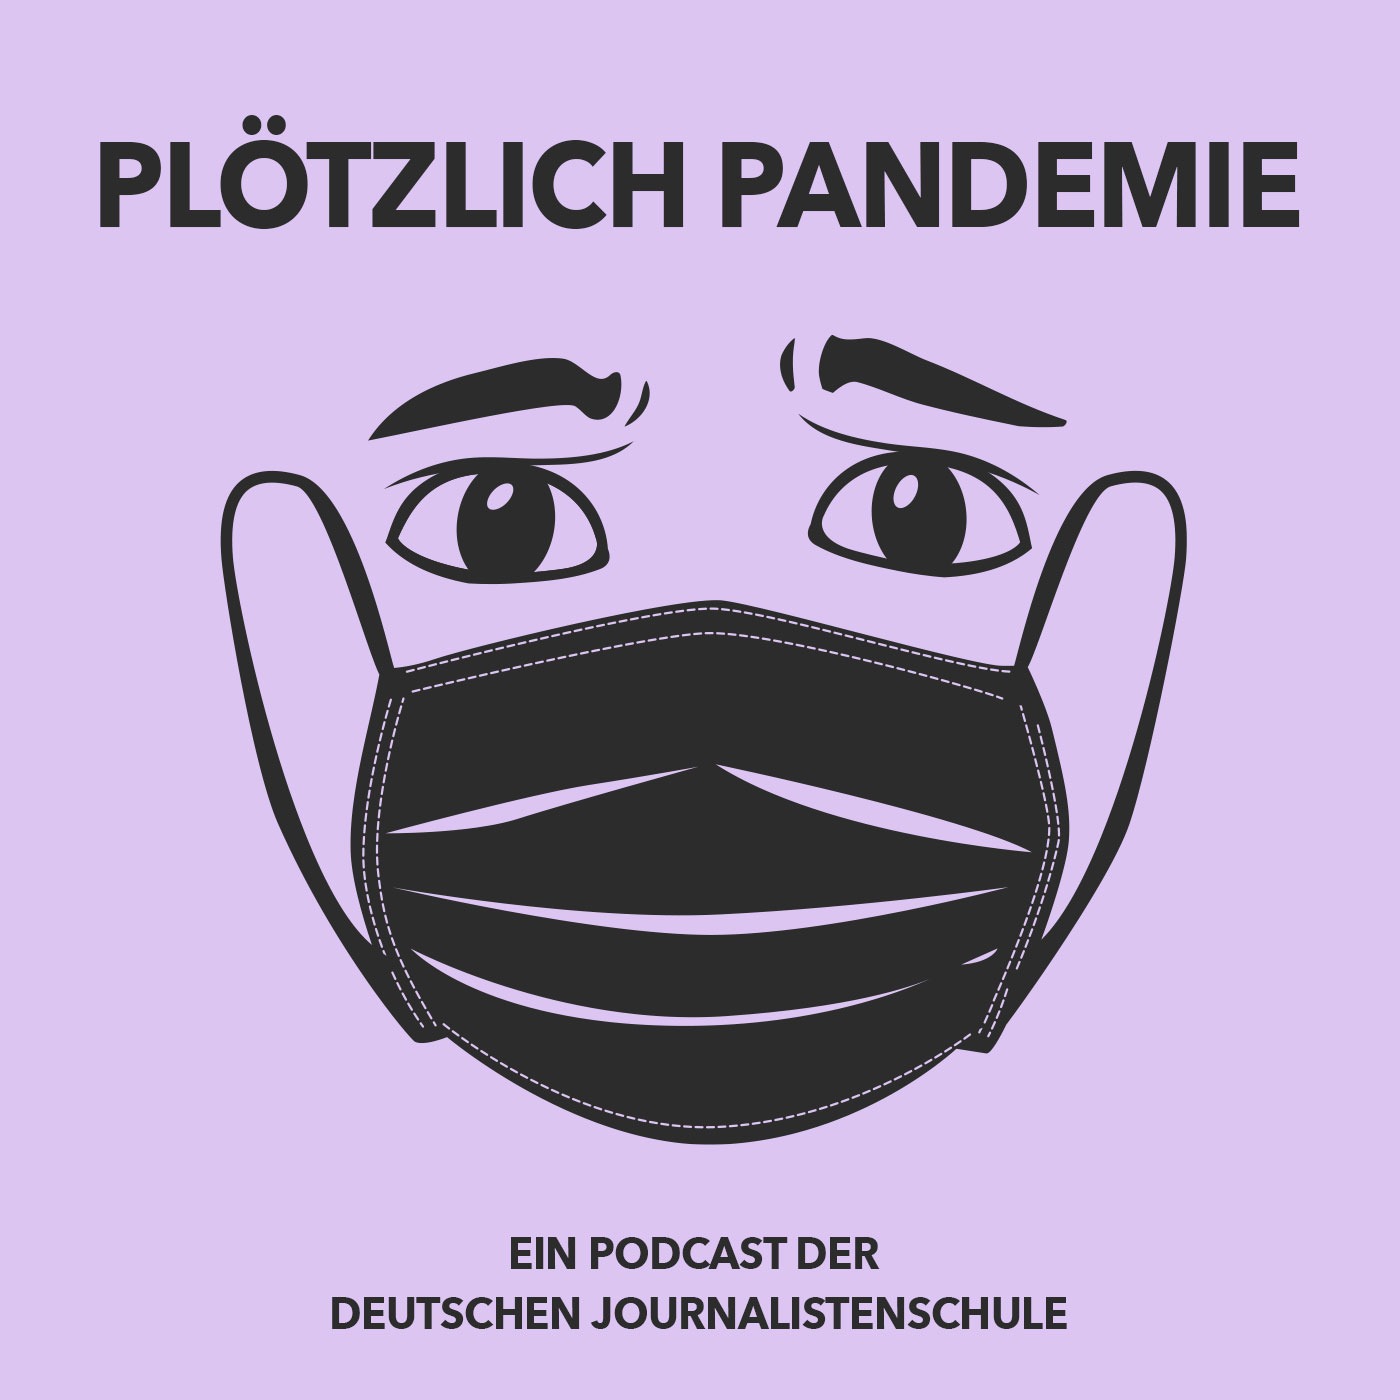 Podcast-Teaser Bild "Plötzlich Pandemie". Rosa Hintergrund, darauf ein Gesicht mit Mund-Nasen-Schutz.